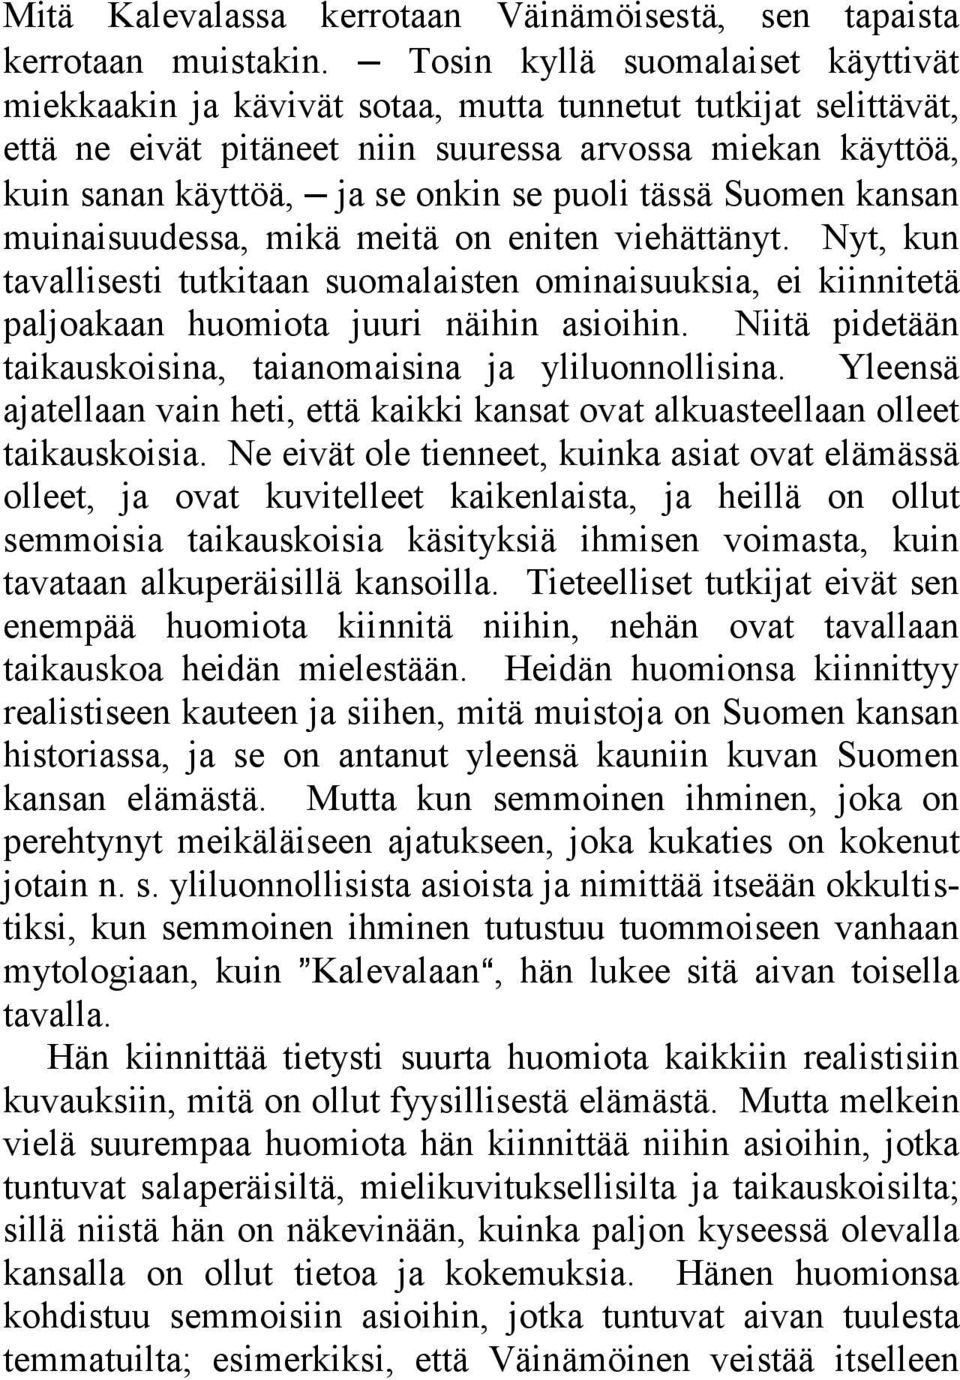 puoli tässä Suomen kansan muinaisuudessa, mikä meitä on eniten viehättänyt. Nyt, kun tavallisesti tutkitaan suomalaisten ominaisuuksia, ei kiinnitetä paljoakaan huomiota juuri näihin asioihin.